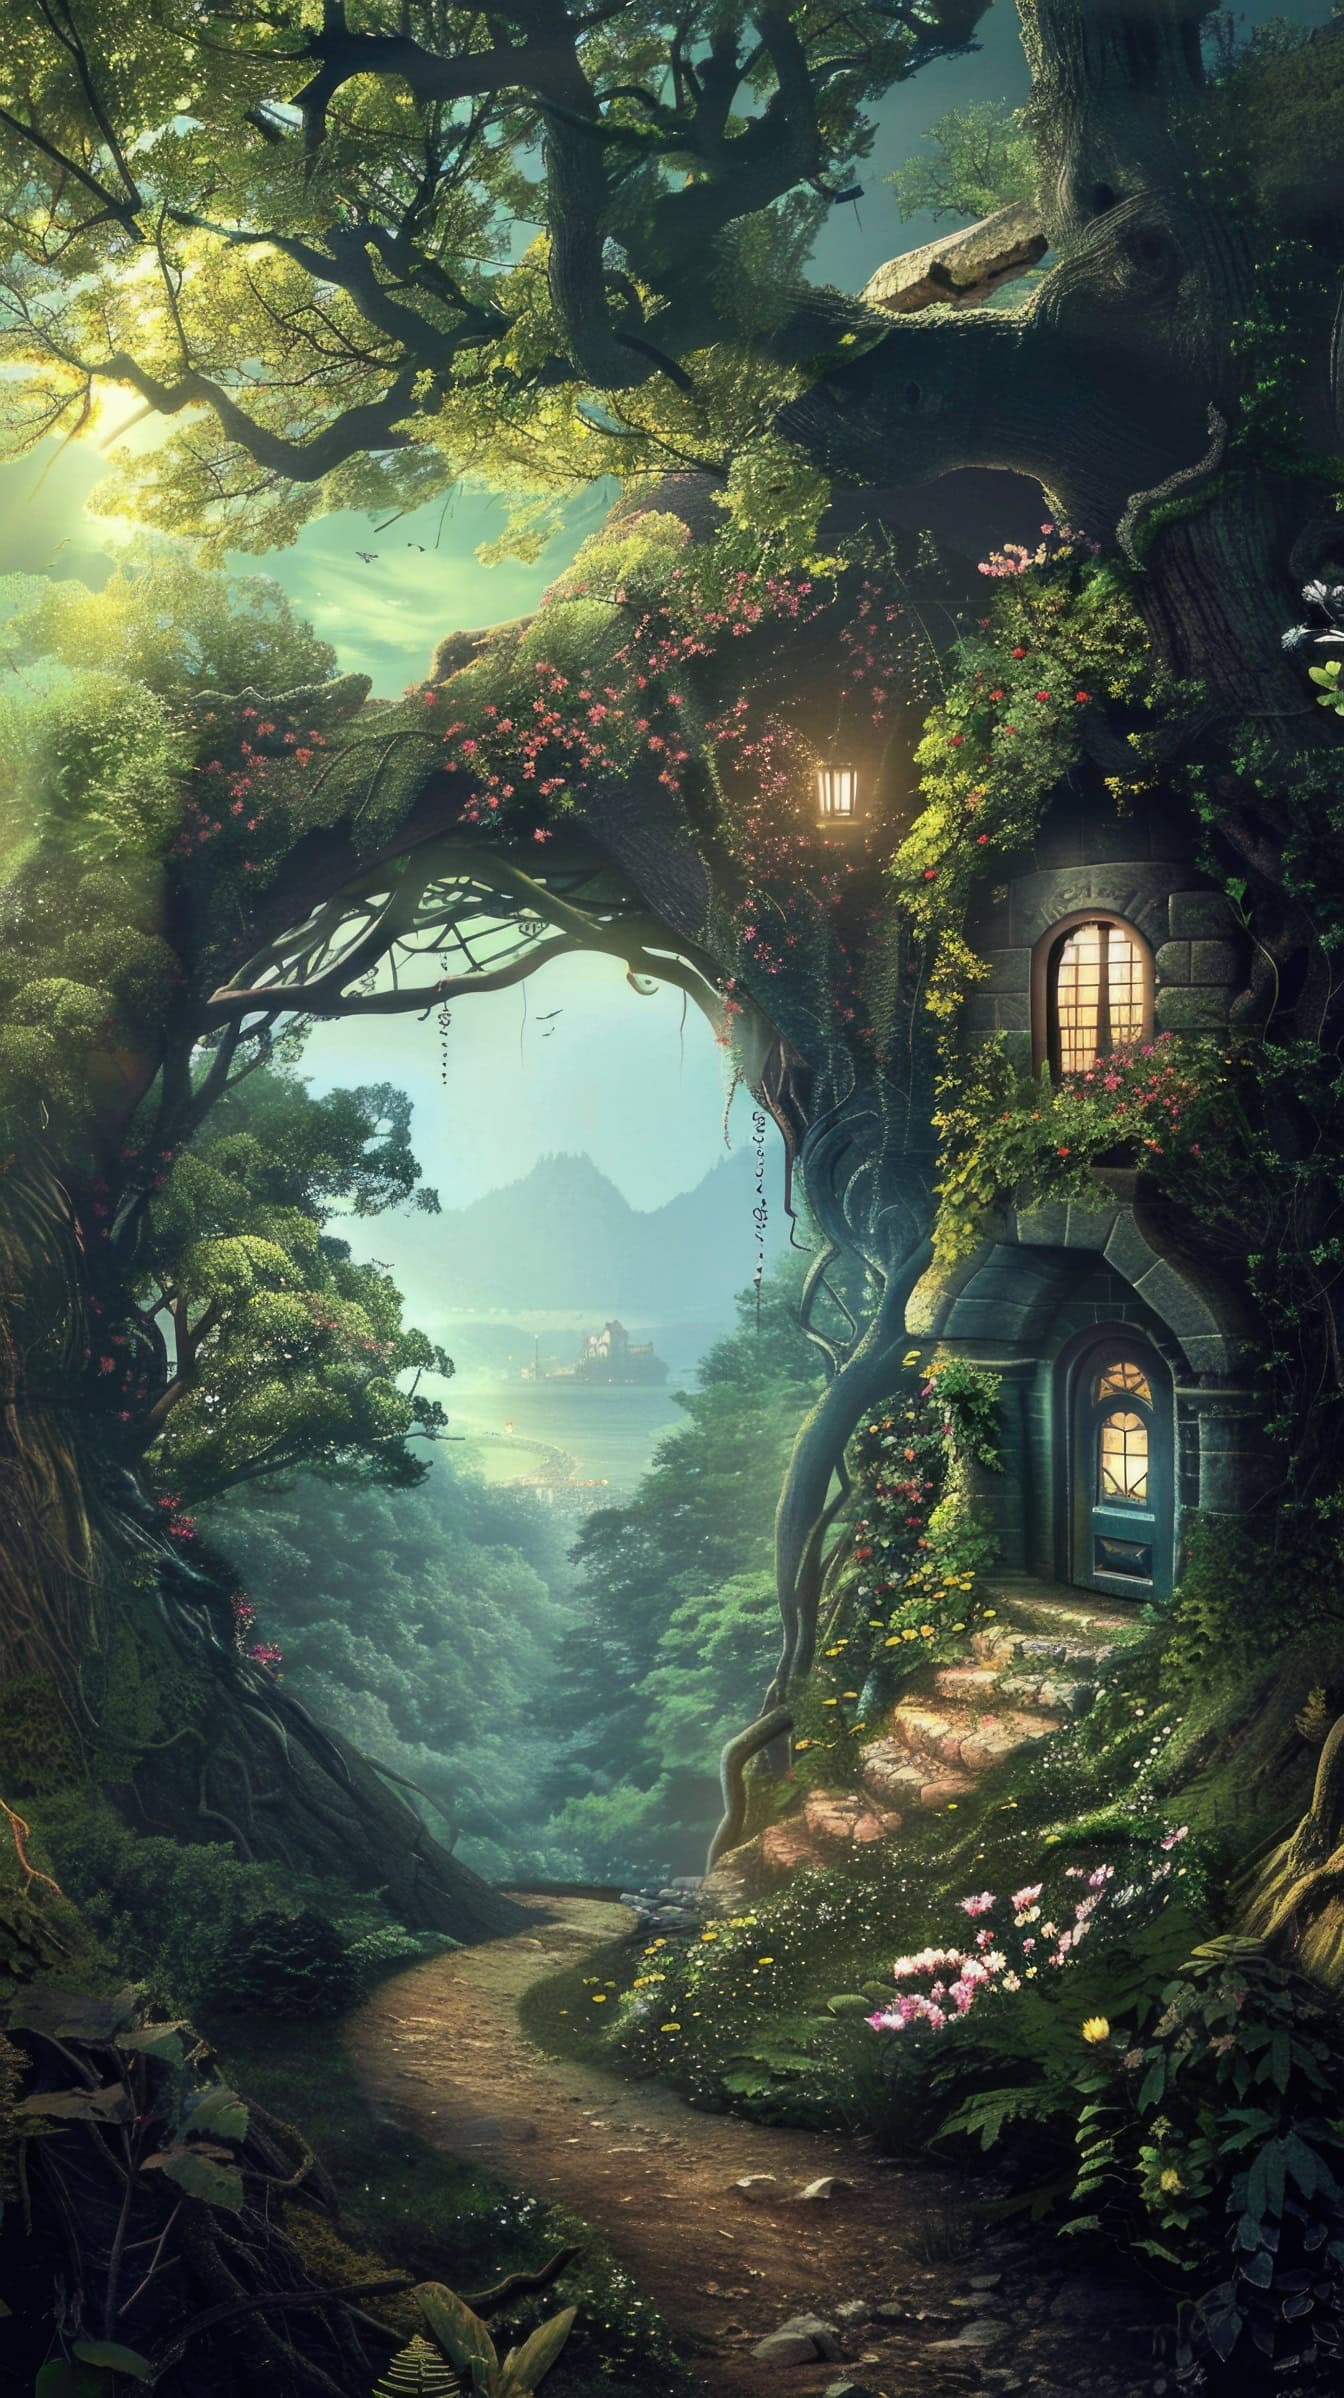 Una magica casa sull’albero da favola lungo il sentiero nel bosco la sera